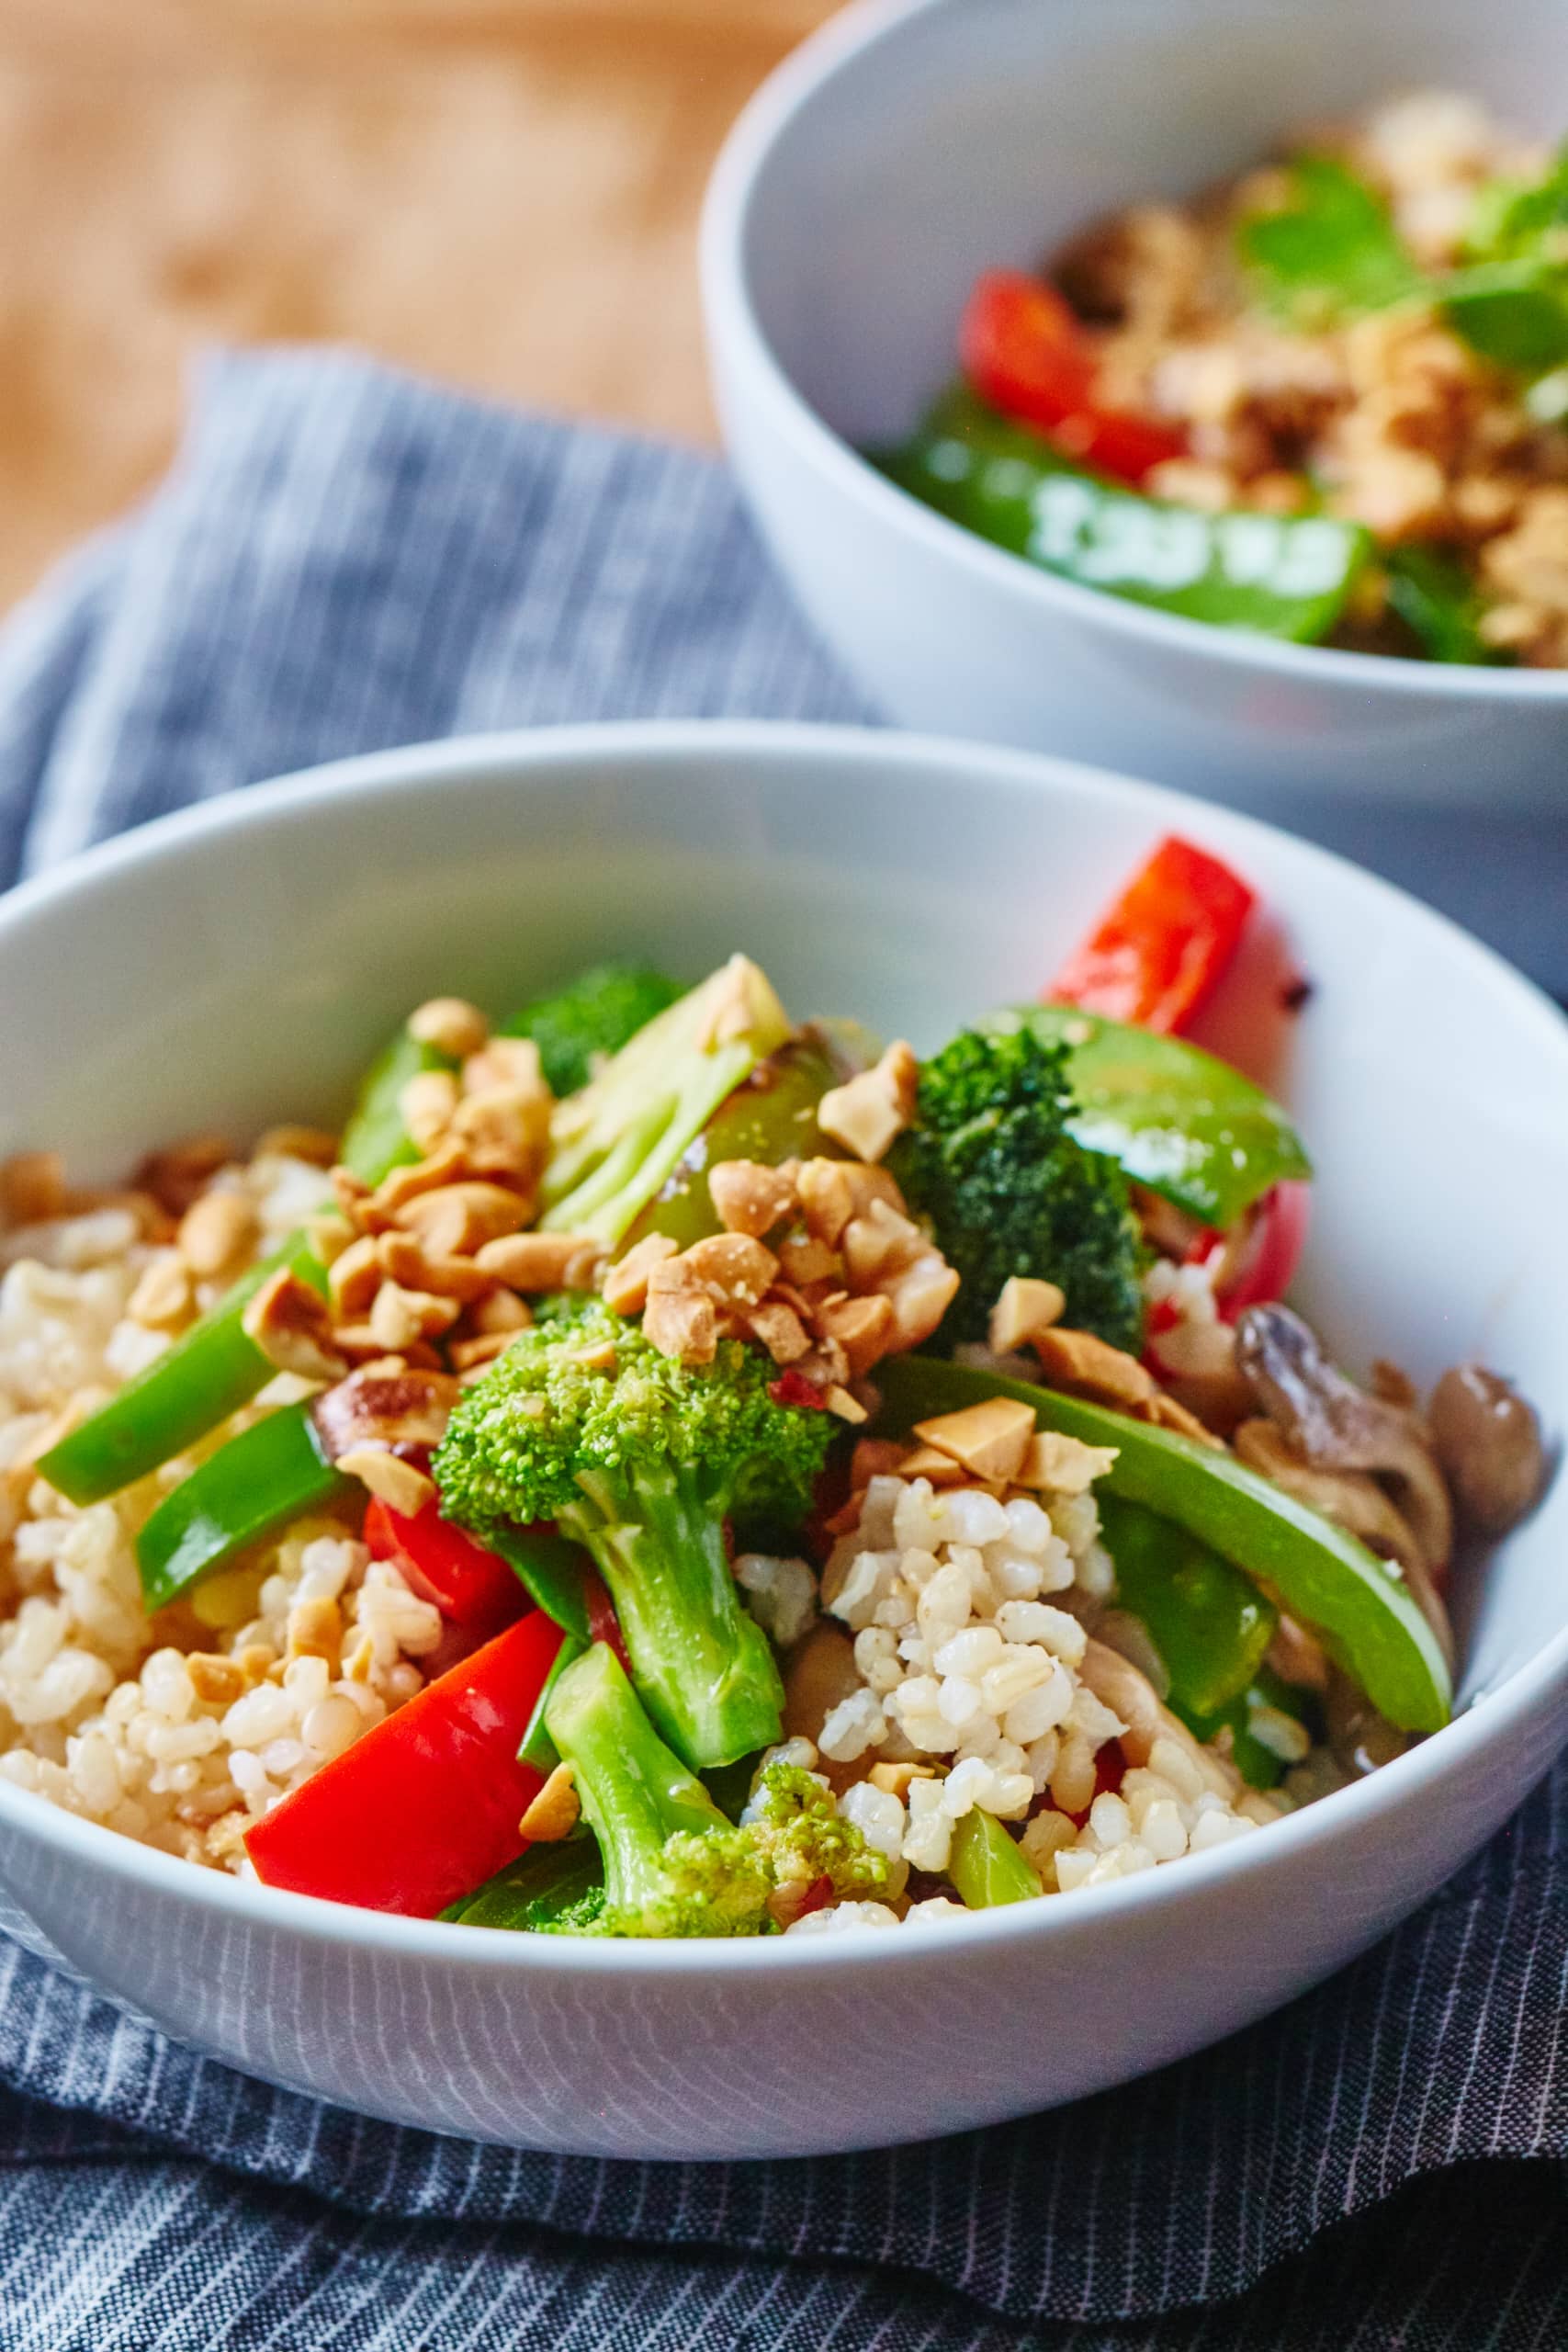 Healthy Recipes Dinner Vegetarian – Recipes Tasty Food